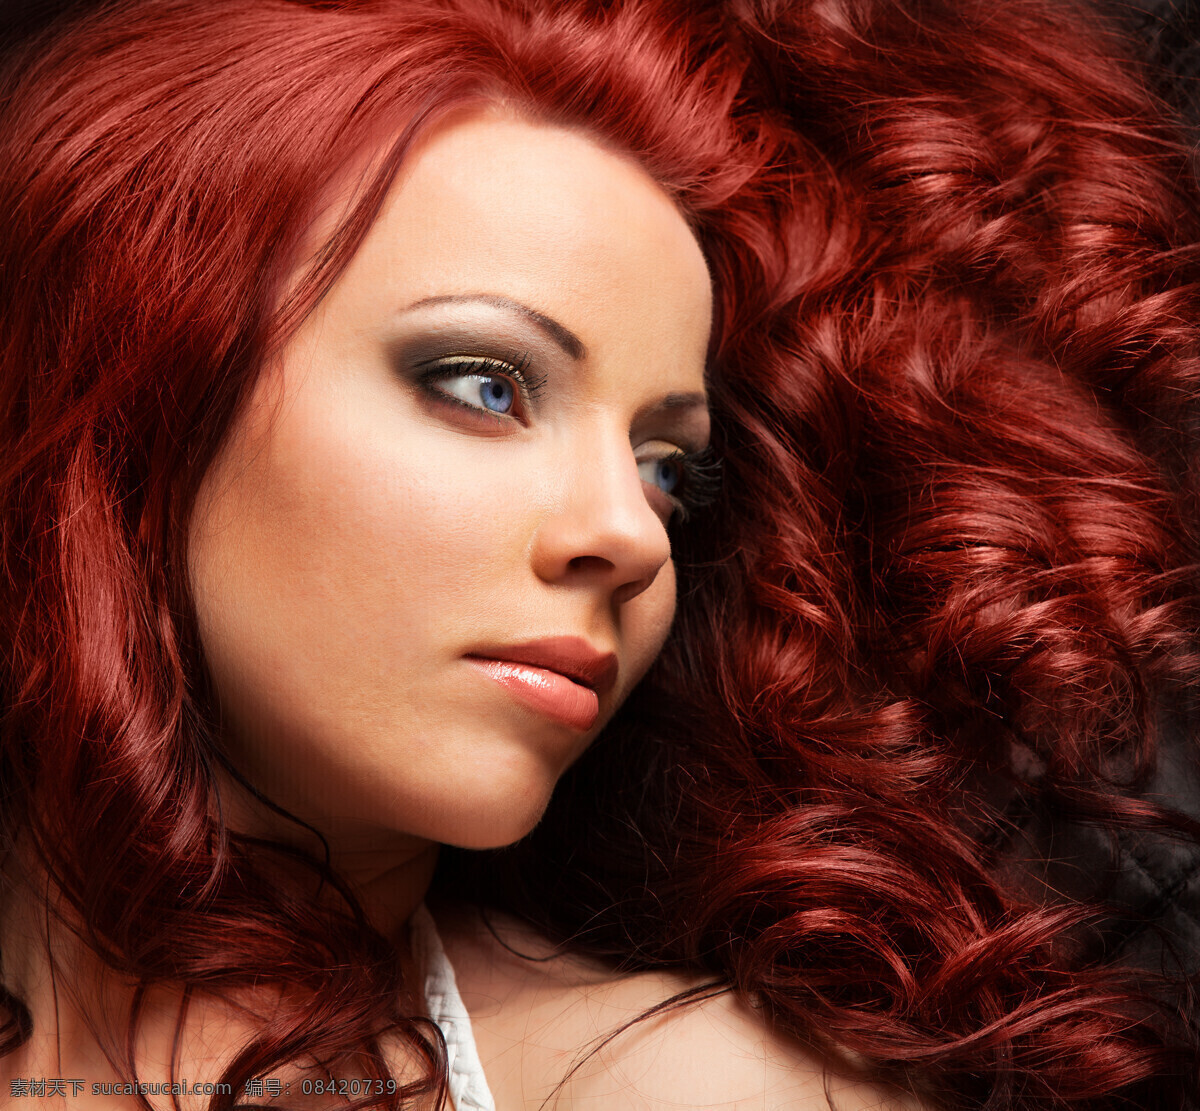 红色 头发 女人 红色头发 美女 外国女人 外国人物 美女图片 人物图片